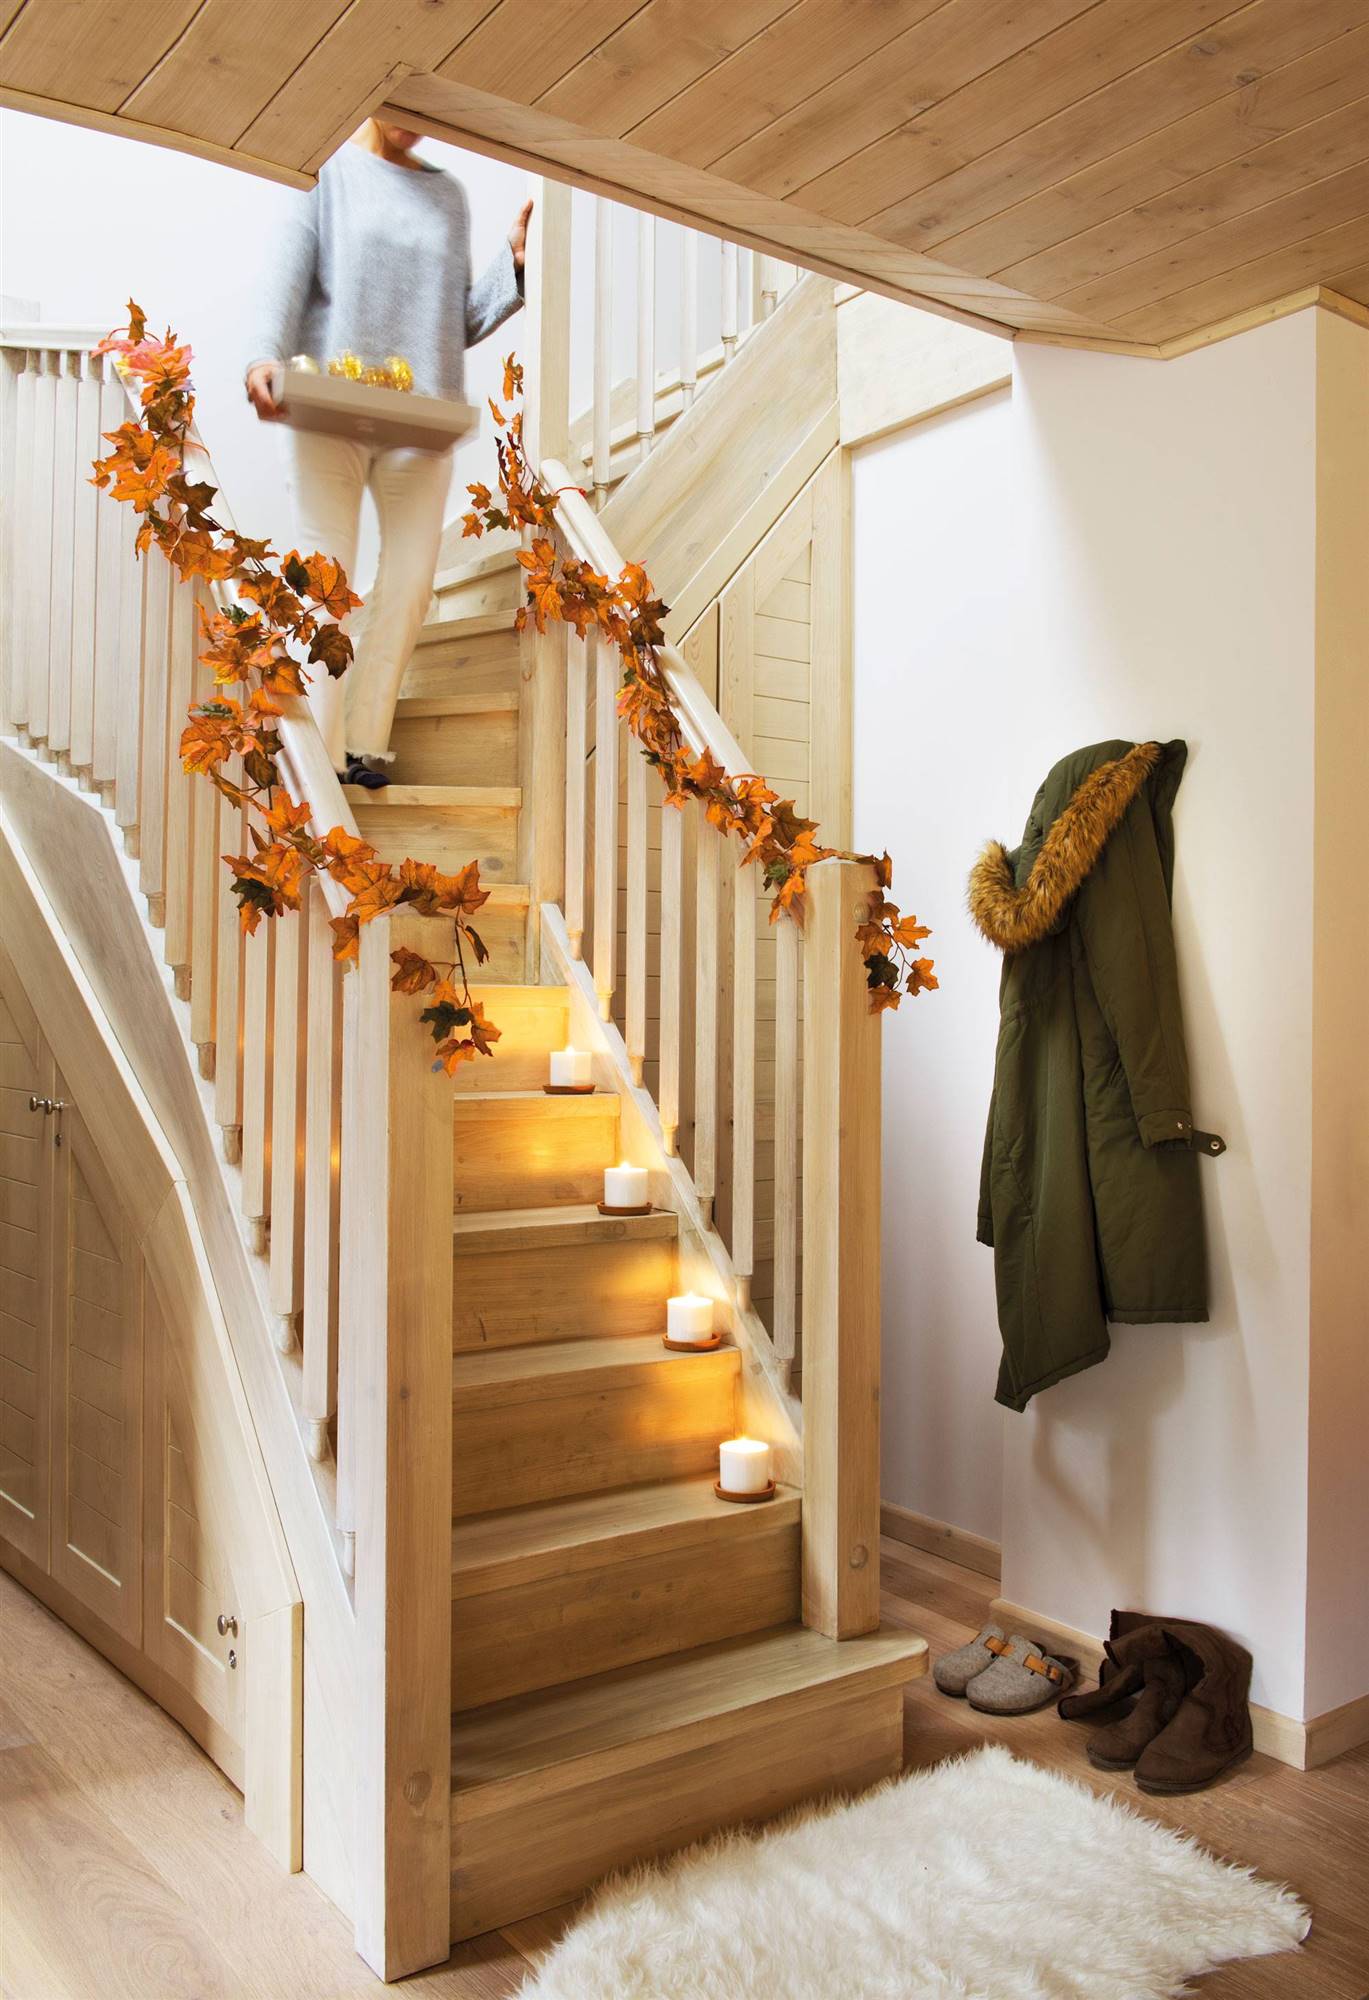 Escalera decorada con guirnalda navideña de hojas secas de otoño 00445005